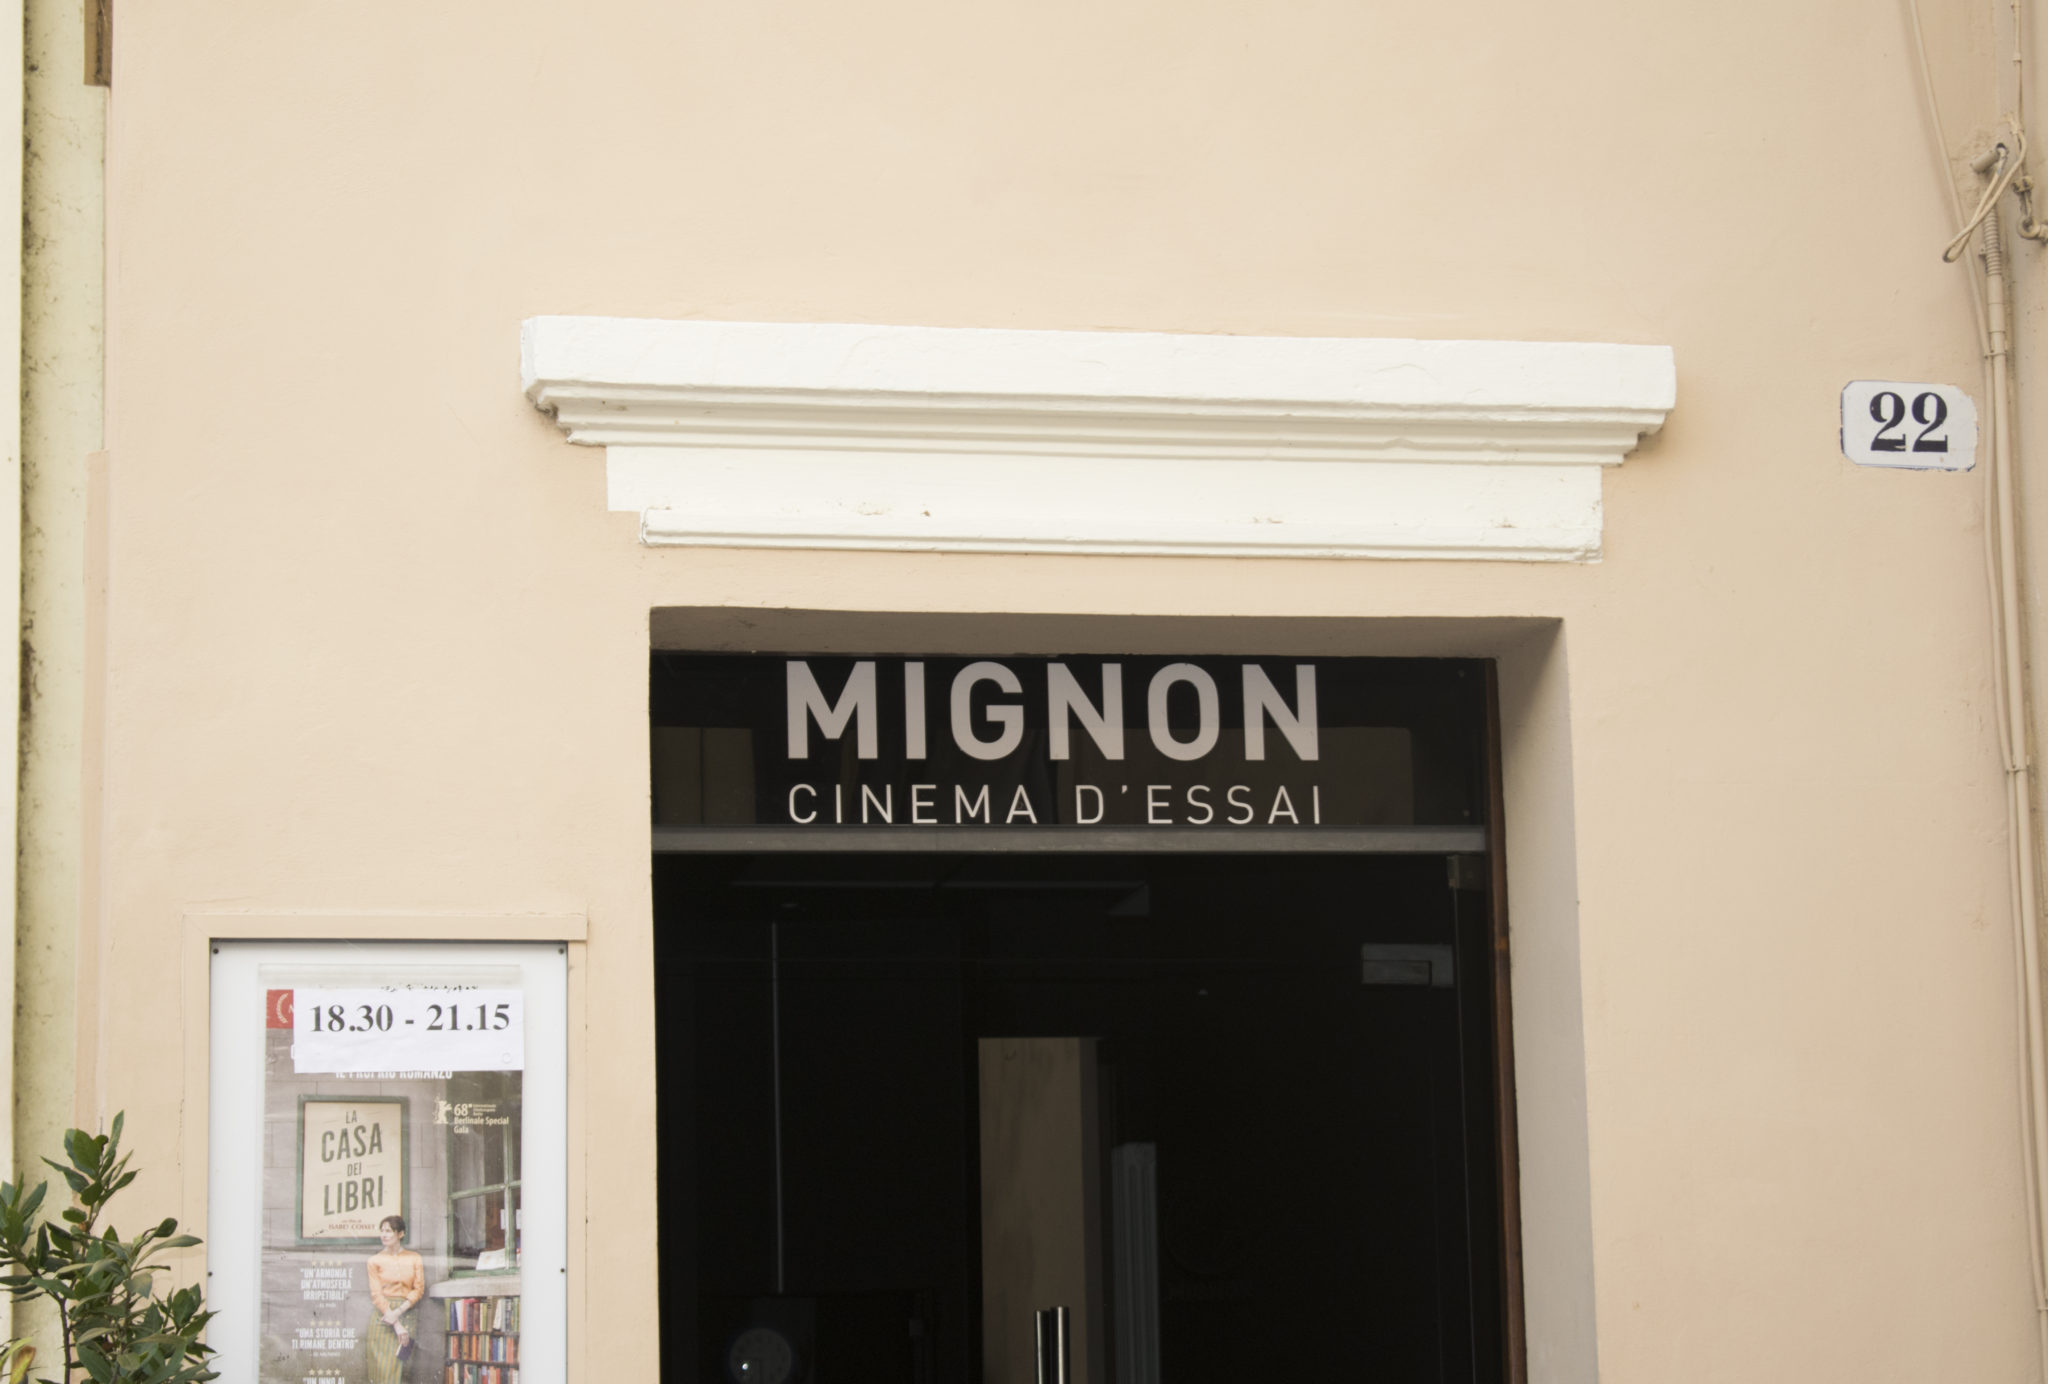 Nel 1976 alcuni studenti aprono un cinema di cui sono i primi spettatori: pellicole diverse dal solito. Oggi il Cinema Mignon è aperto a tutti